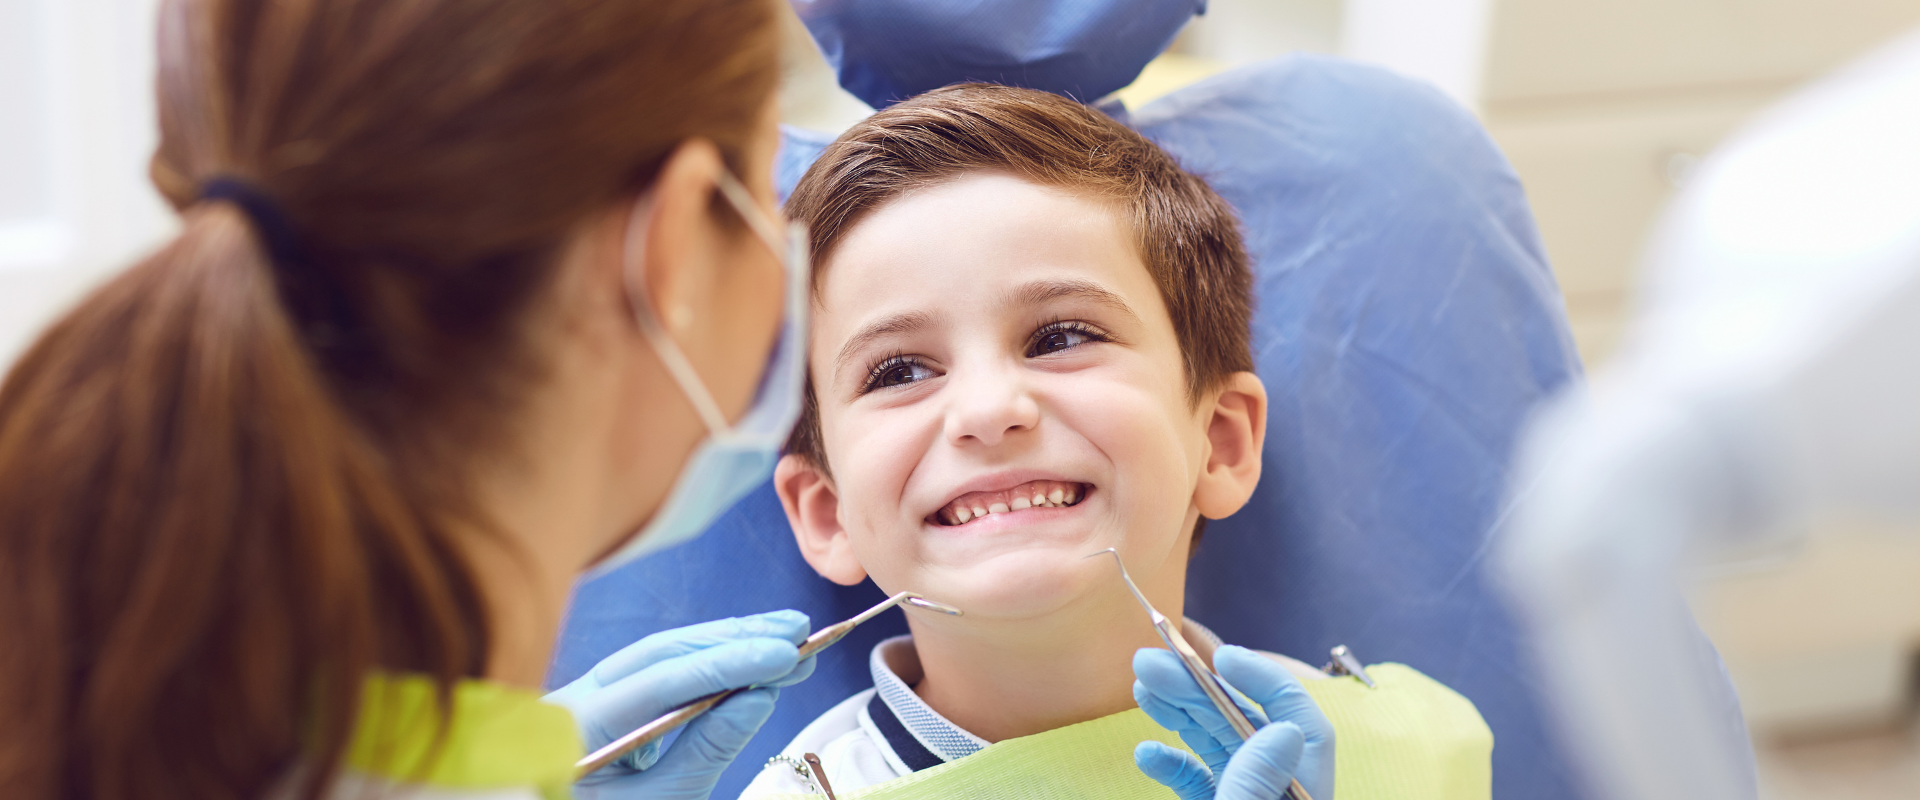 Choosing A Pediatric Dentist